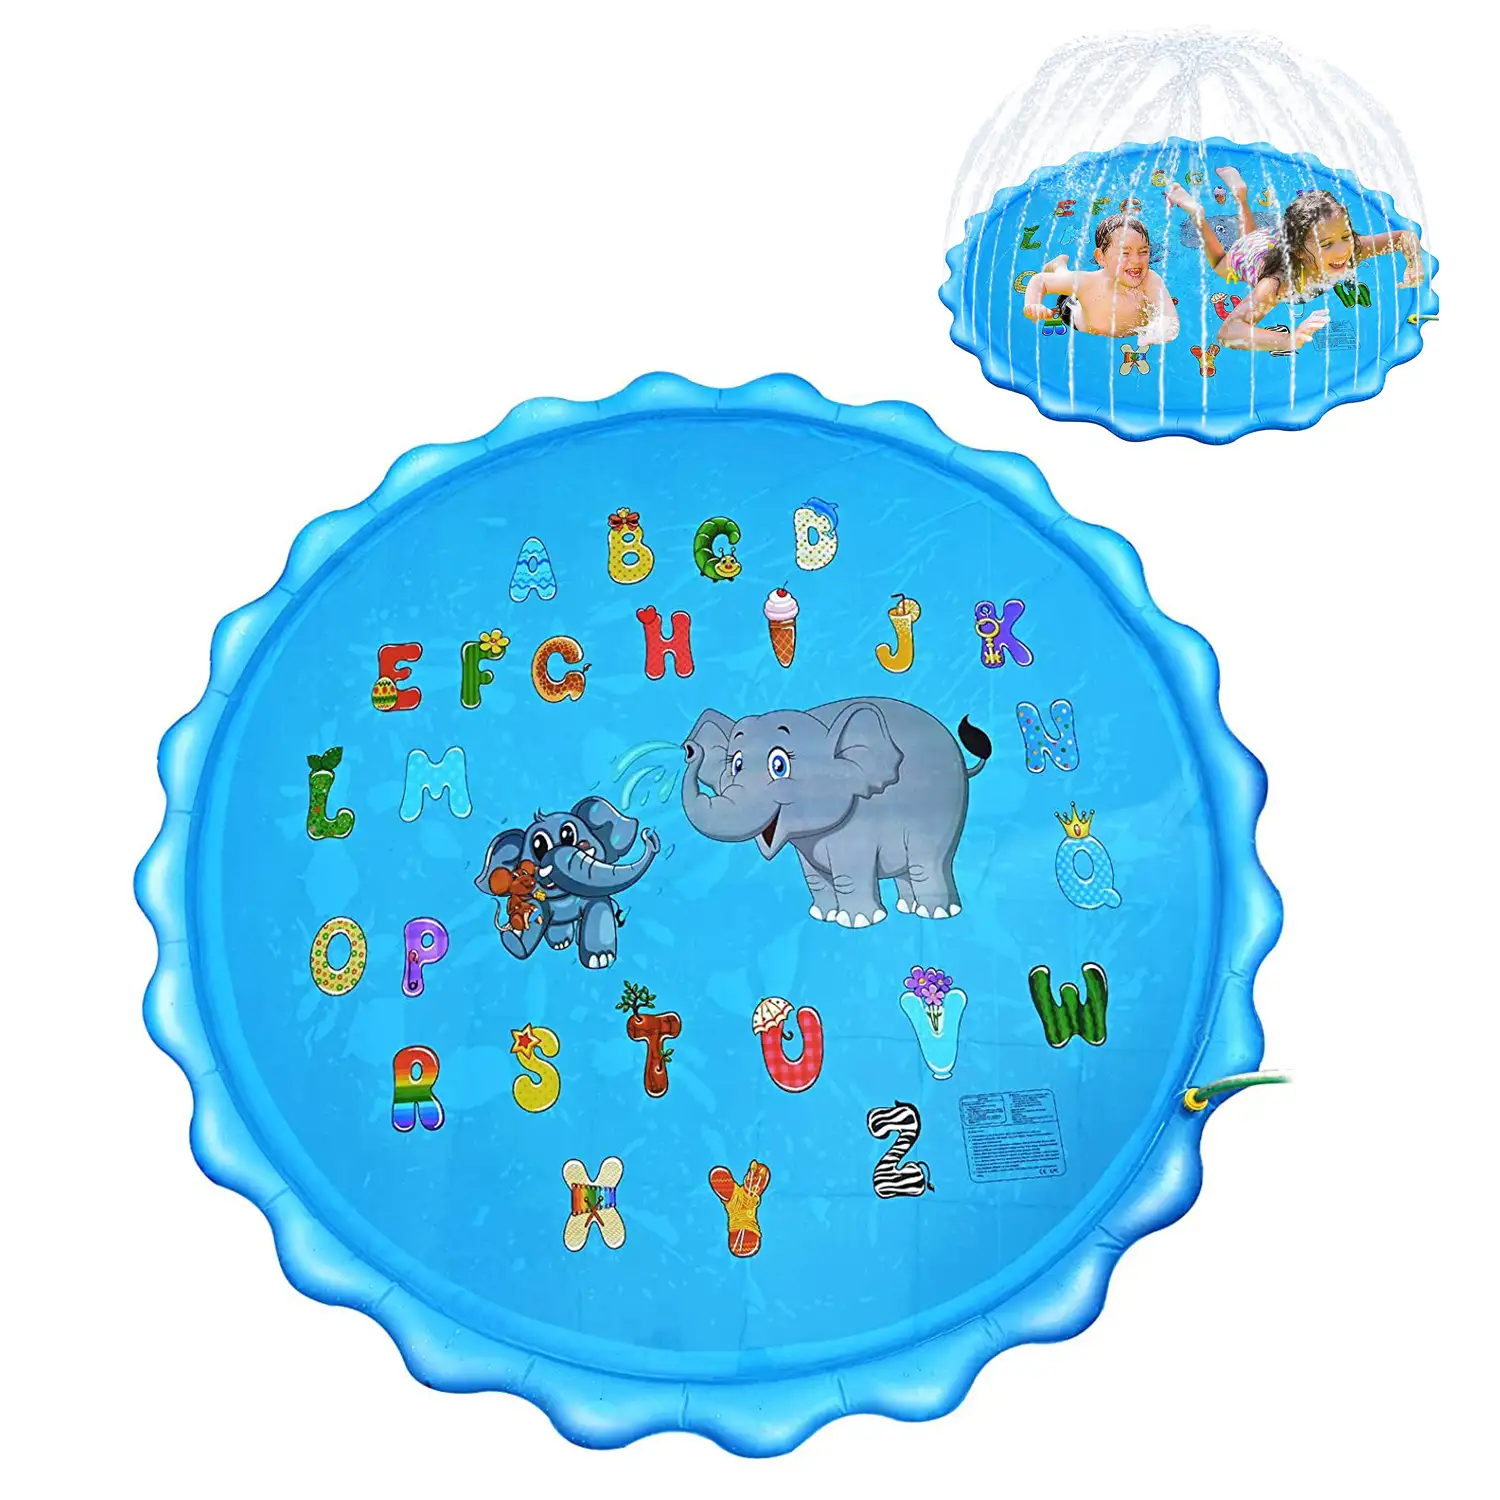 Splash Pad. Juguete inflable con aspersor de agua para jugar. 200cm de diámetro. Diseño animalitos y abecedario.